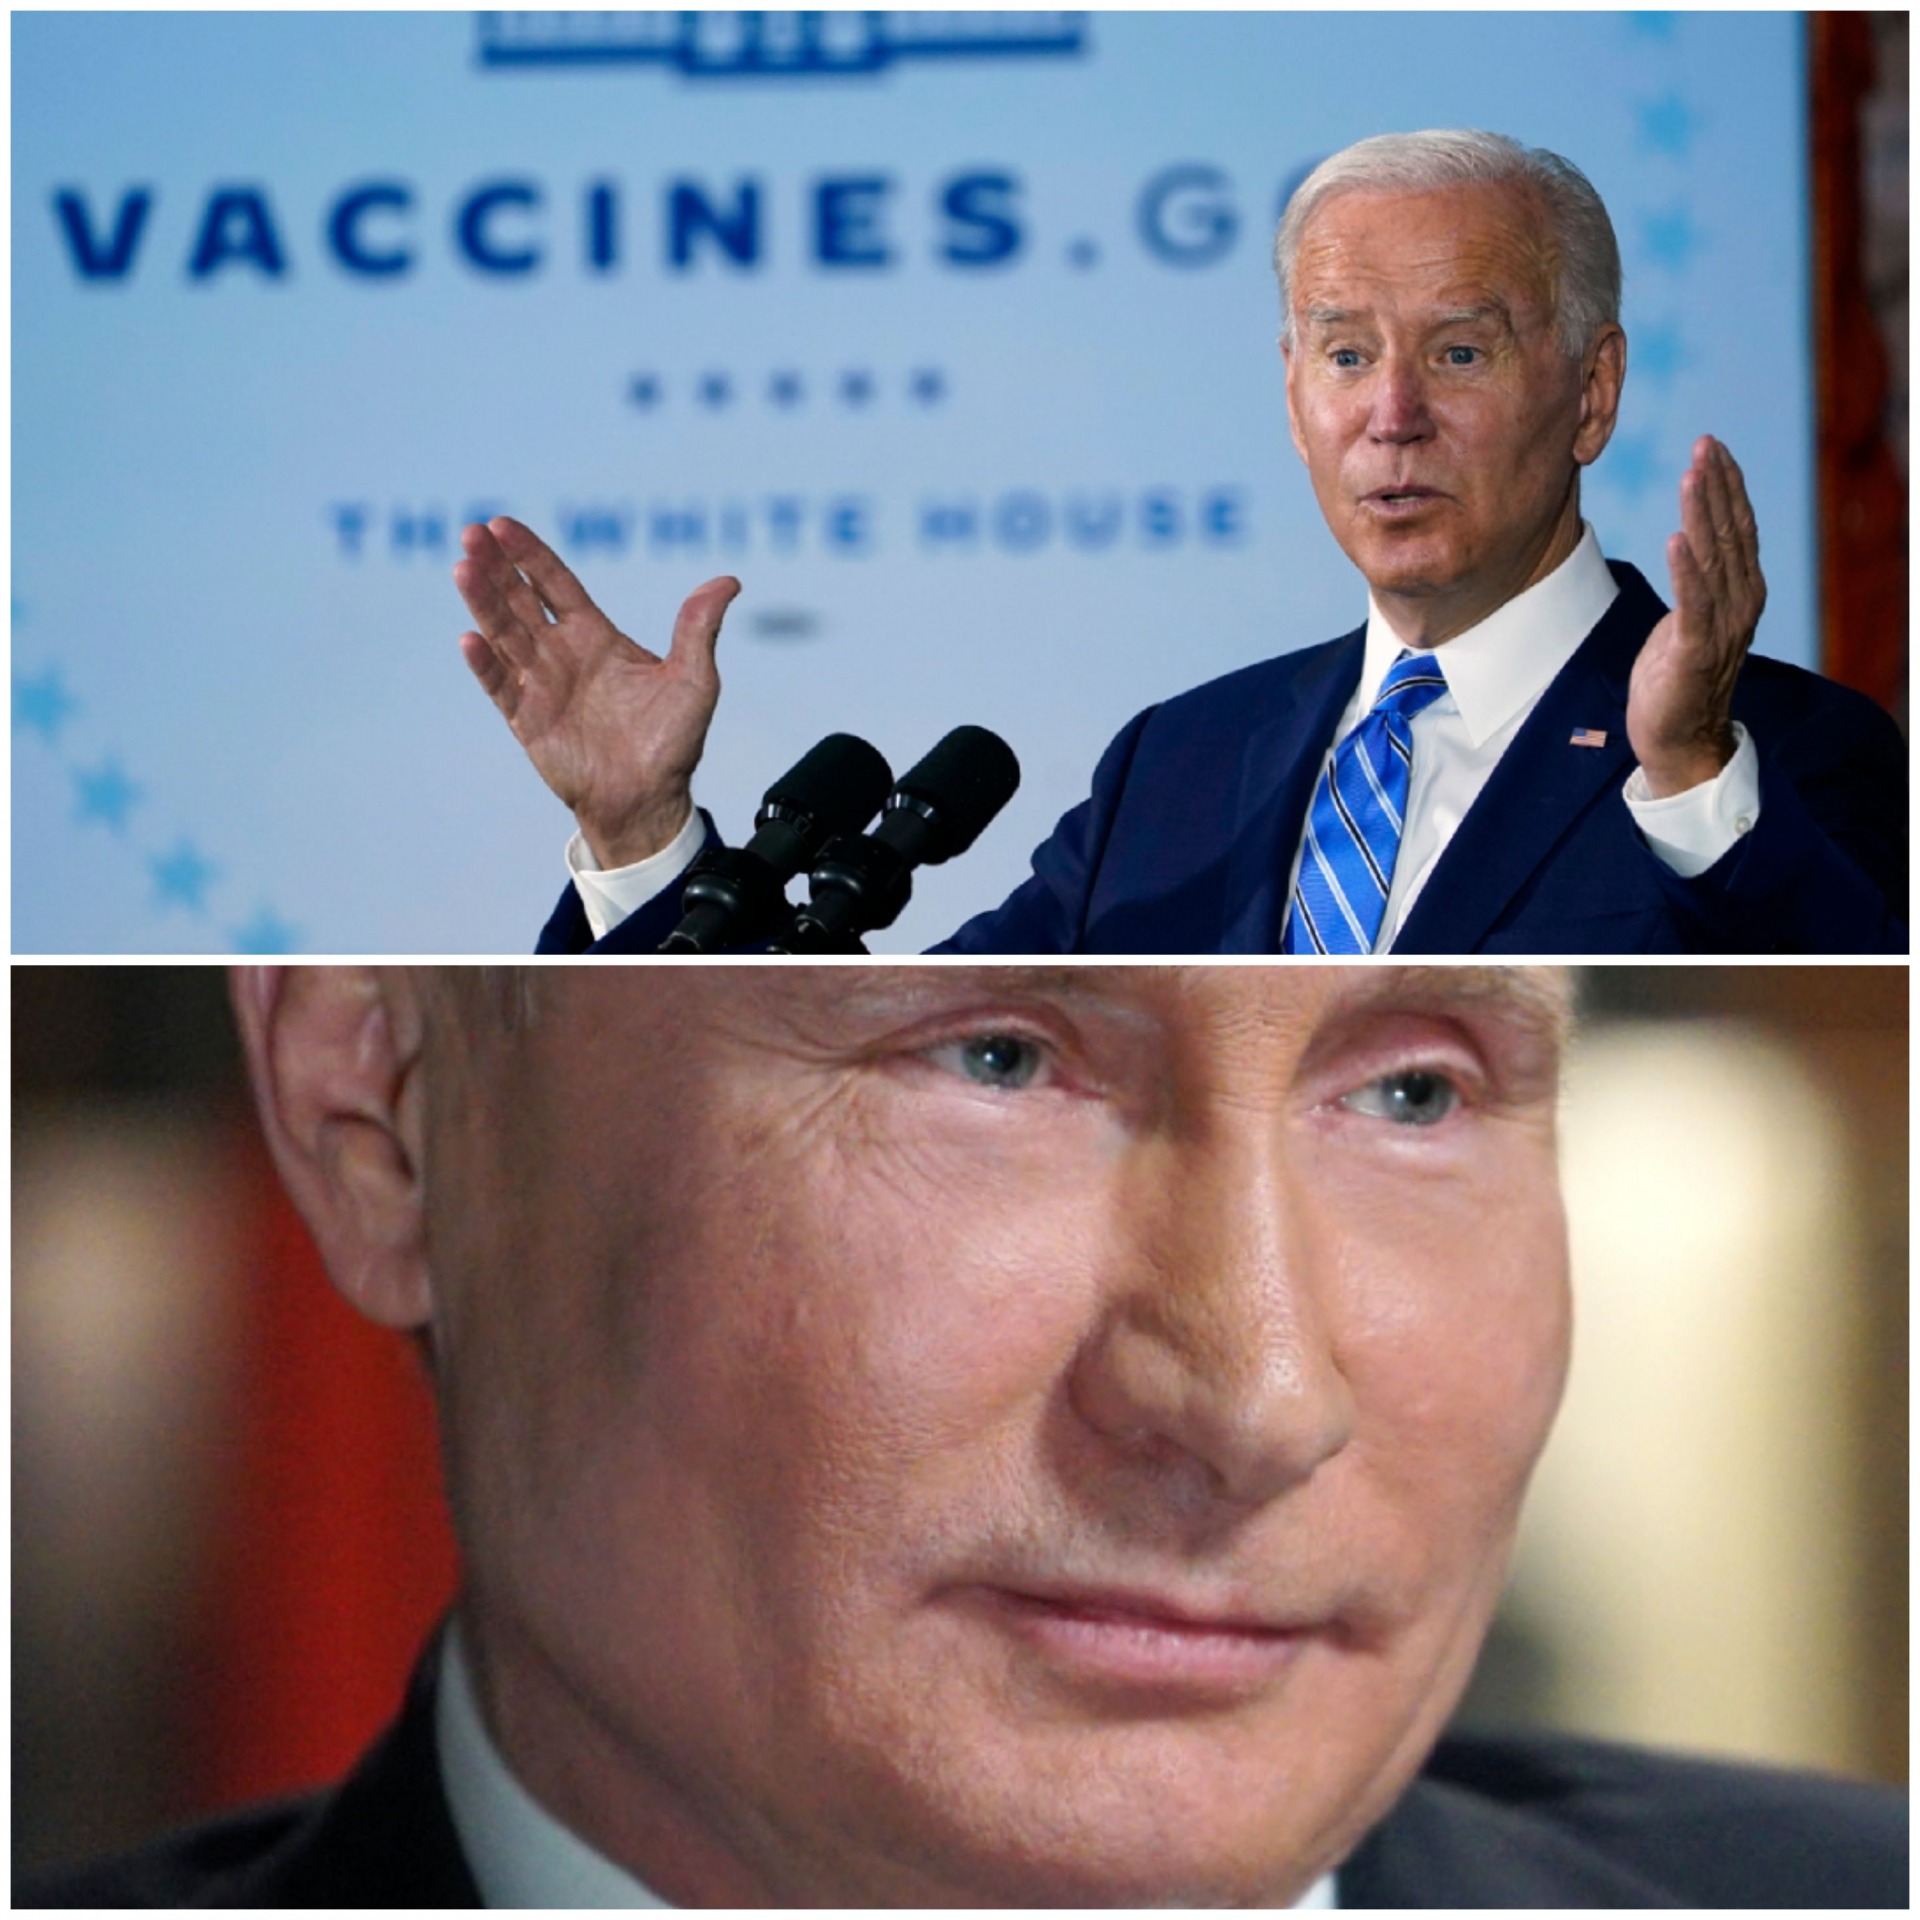 High Quality Putin vs biden Blank Meme Template